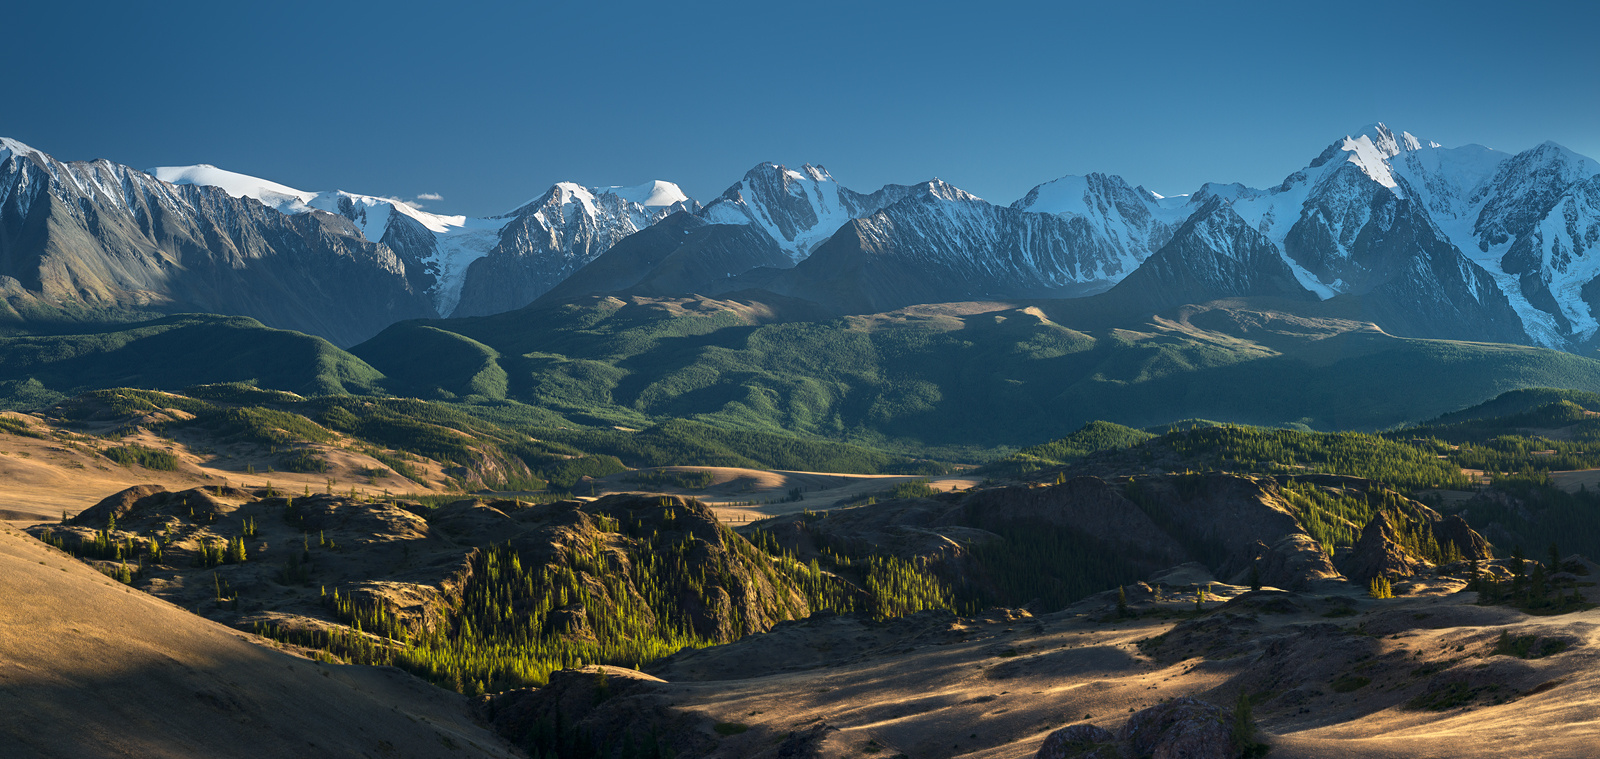 Панорама Северо-Чуйского хребта панорама пейзаж природа горы вершины хребет степь долина вечер снег ледники камни скалы высокий большой красивая Алтай Сибирь Курай Чуйский